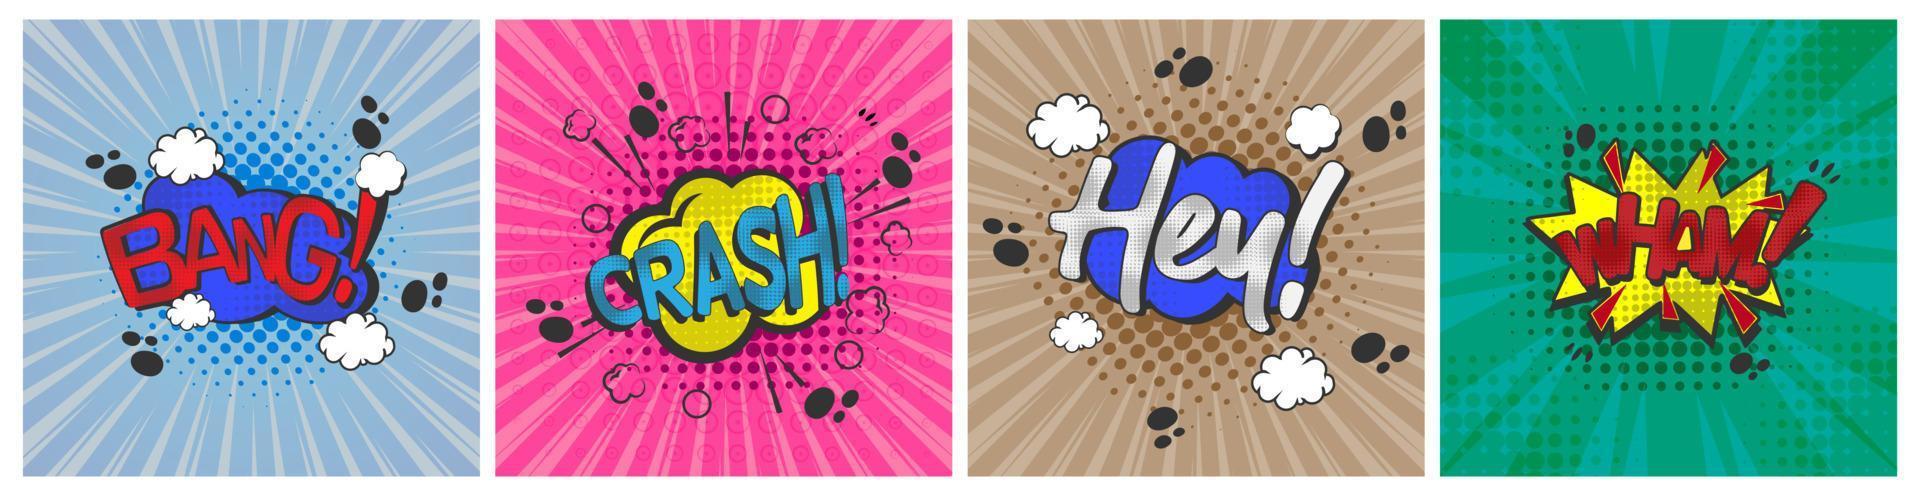 tekst komische bubbelverzameling, wham, hey, crash en bang, pop-art in cartoonstijl, vector